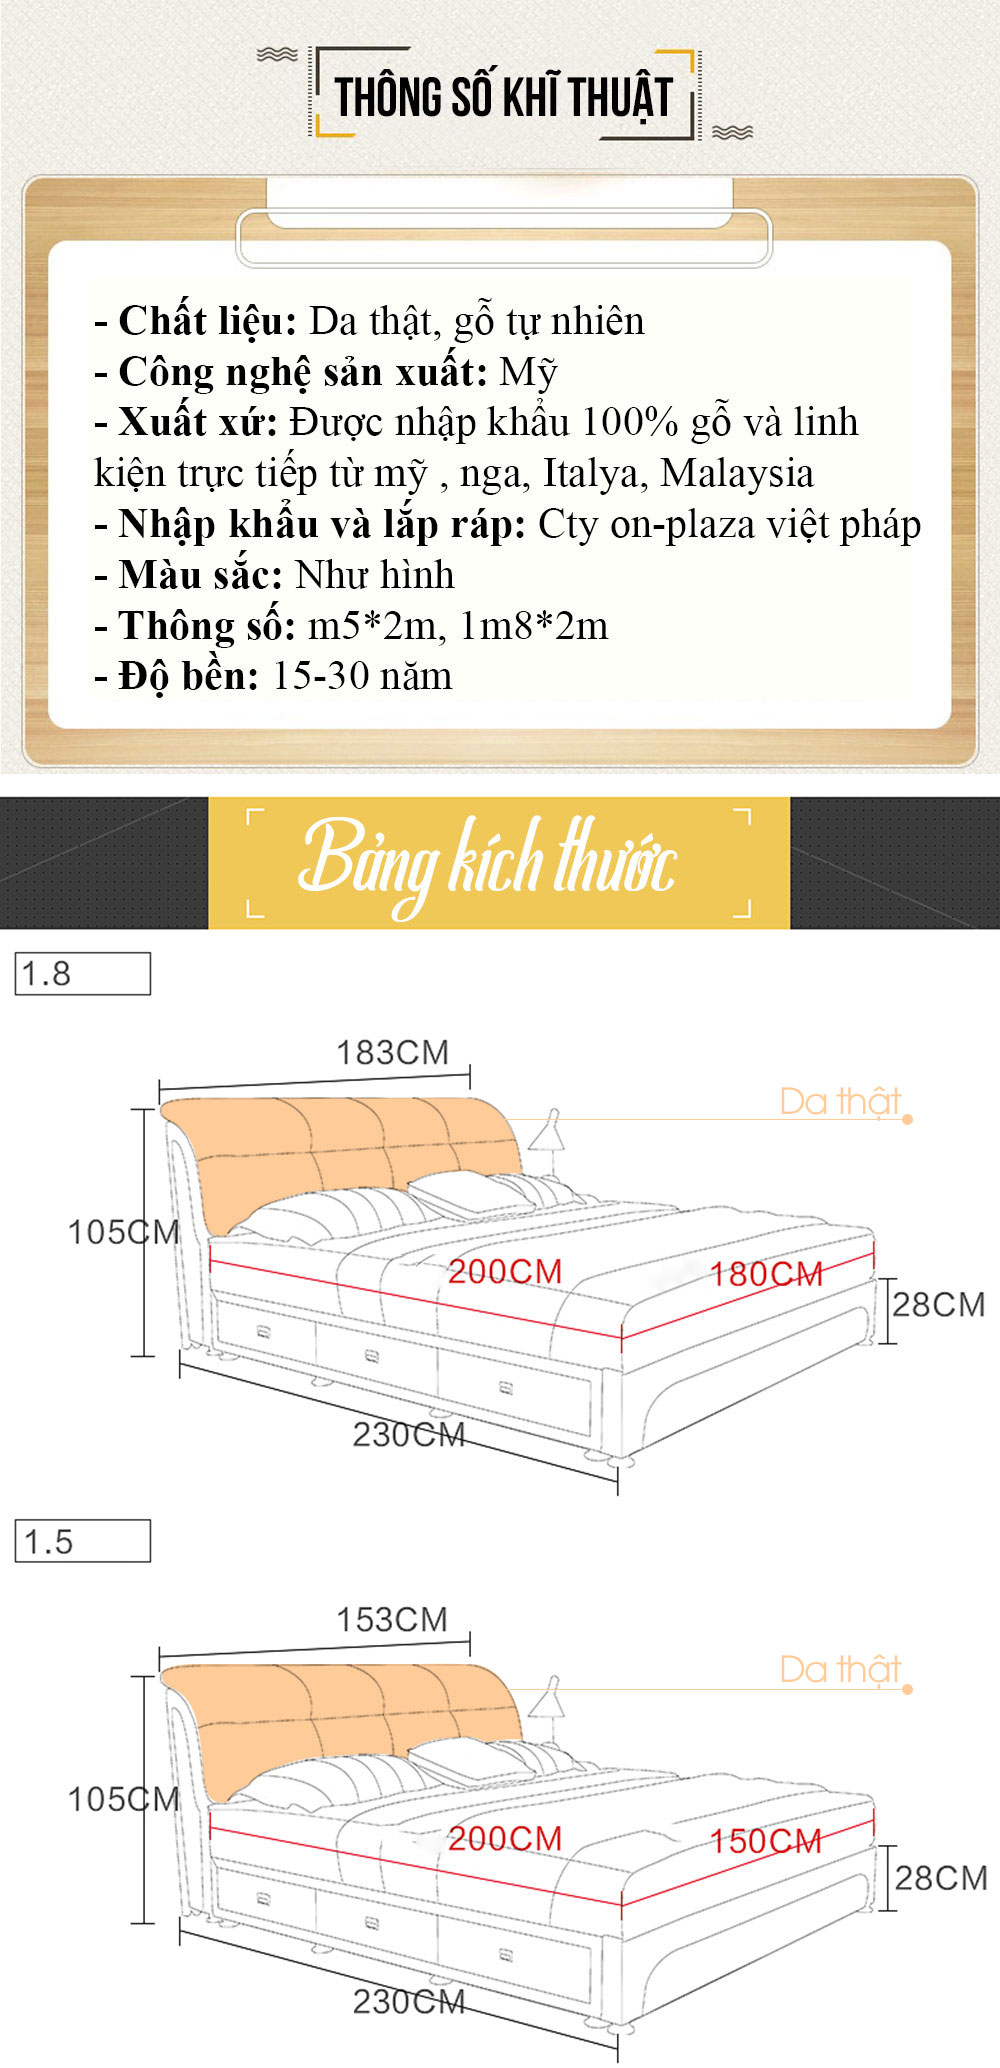 Bộ giường ngủ bọc nệm da đa năng nhập khẩu cao cấp ( bao gồm 2 táp) G80 